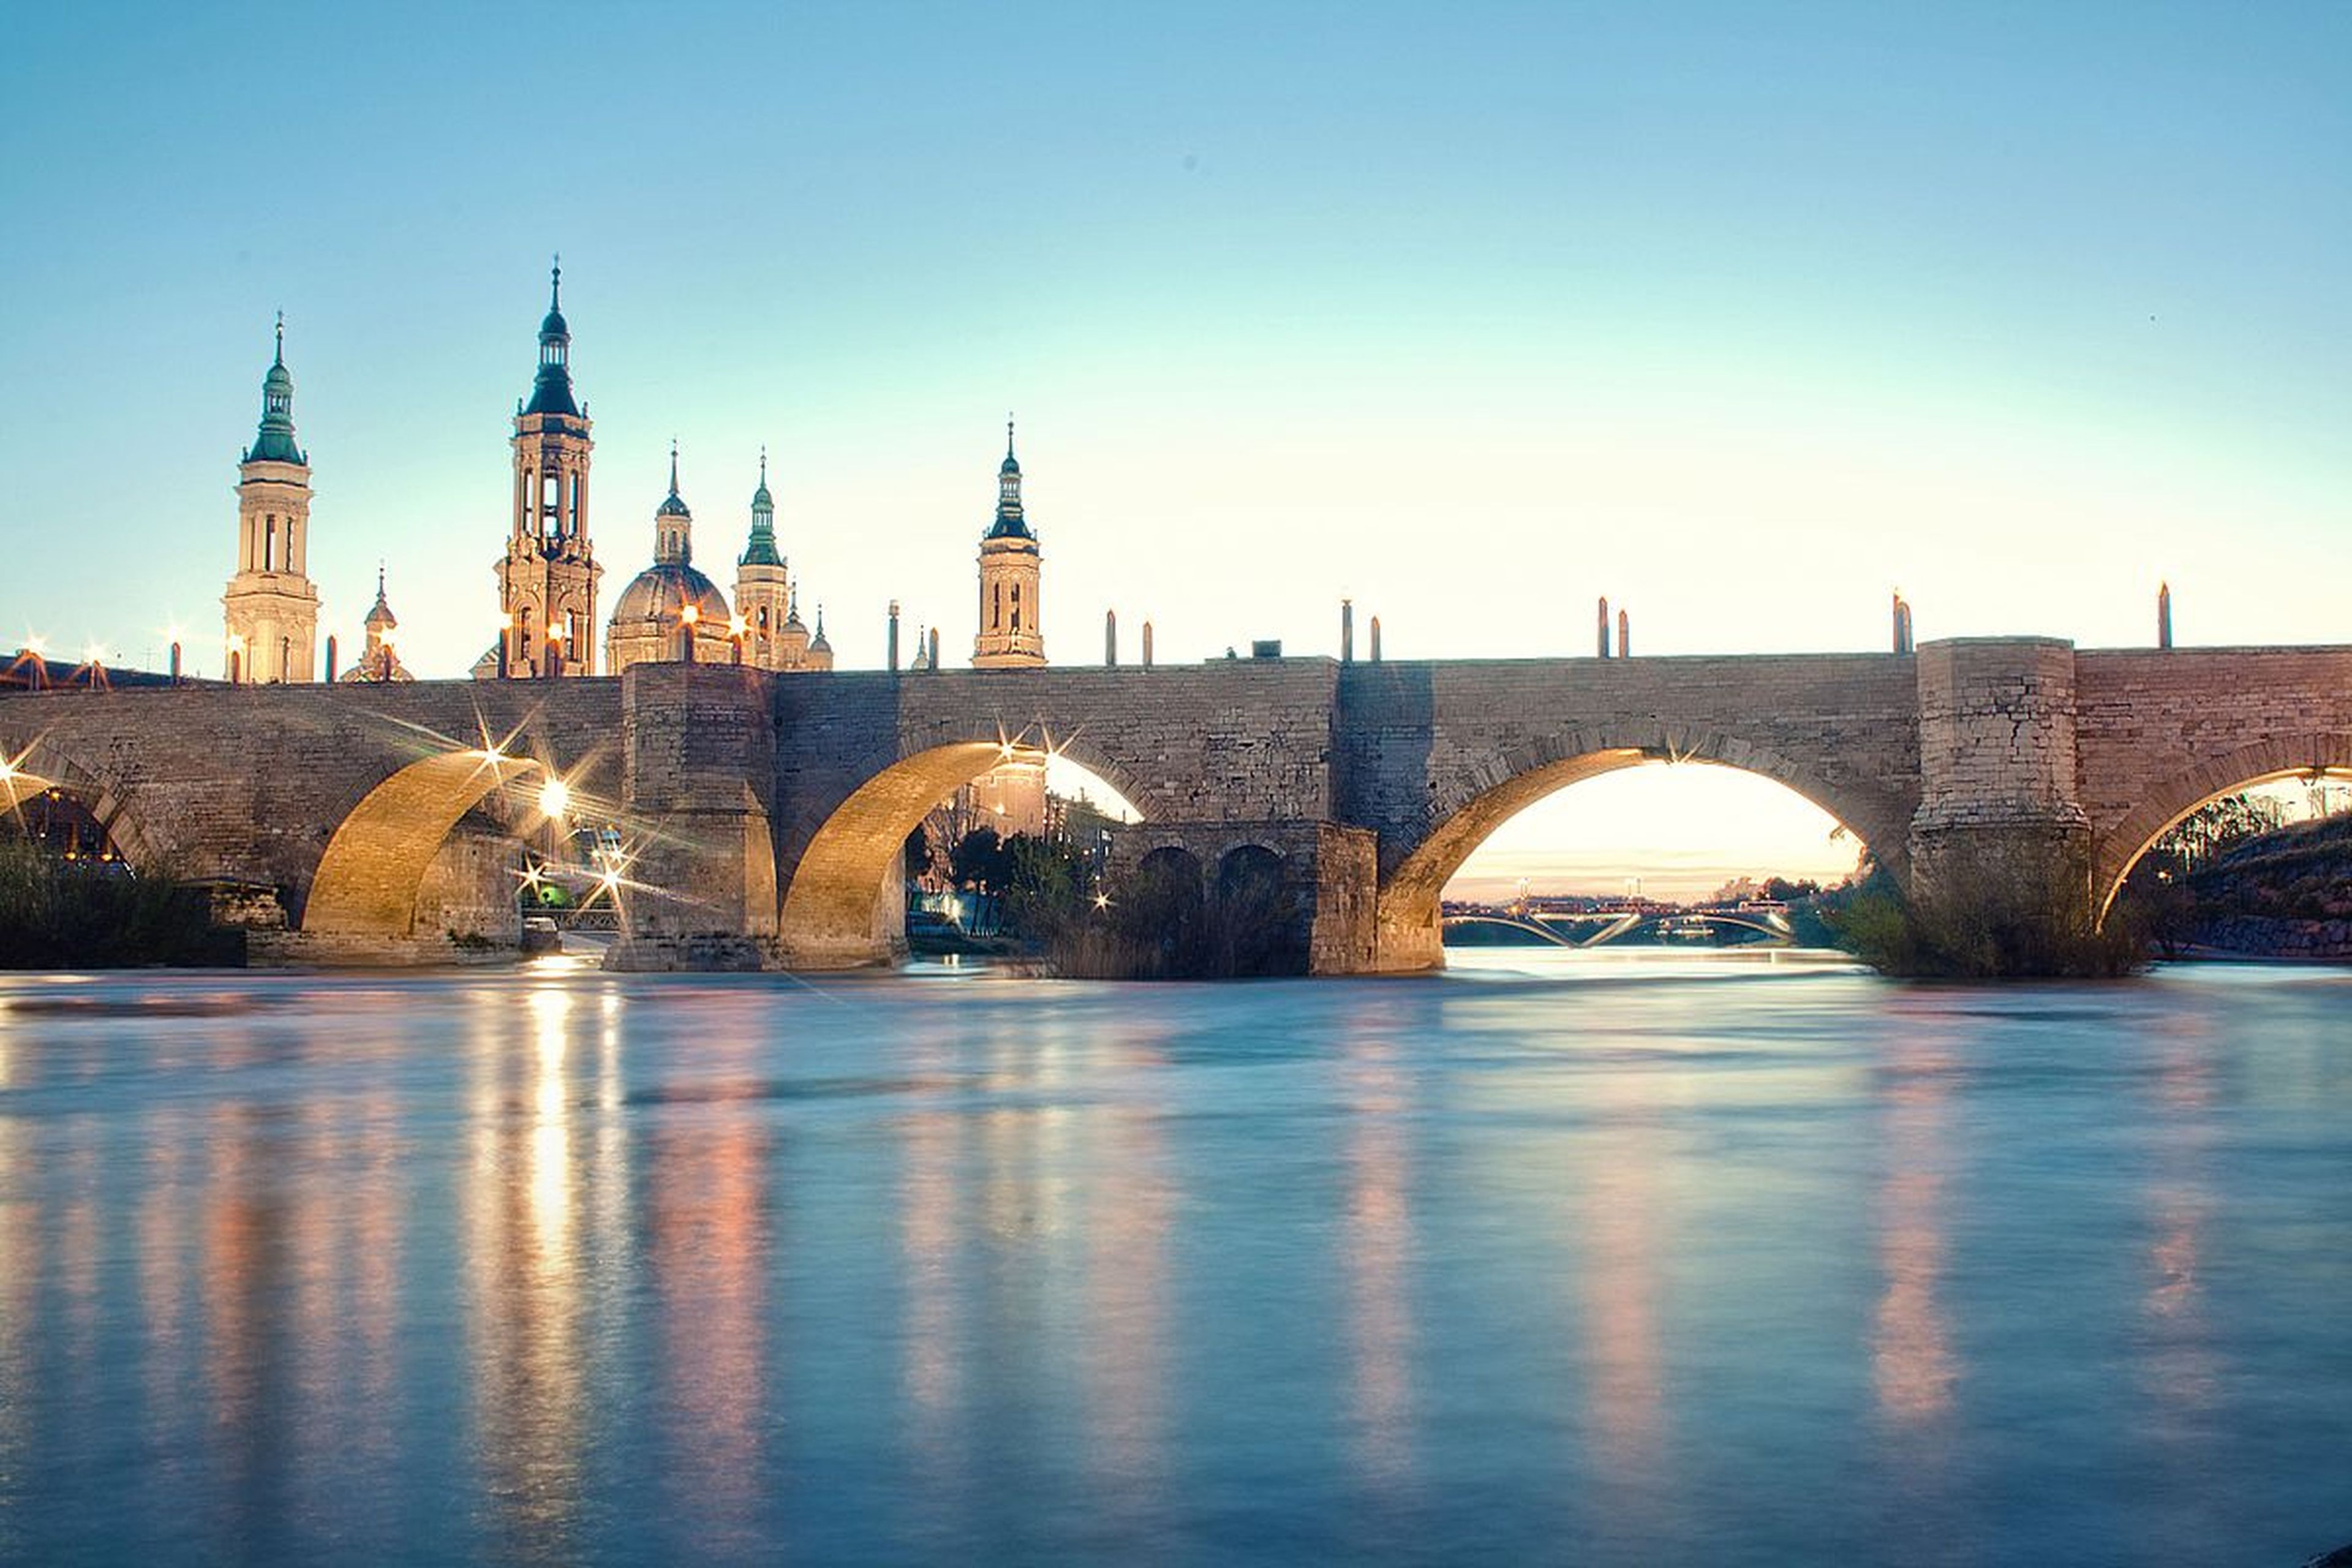 Puente de piedra de Zaragoza.